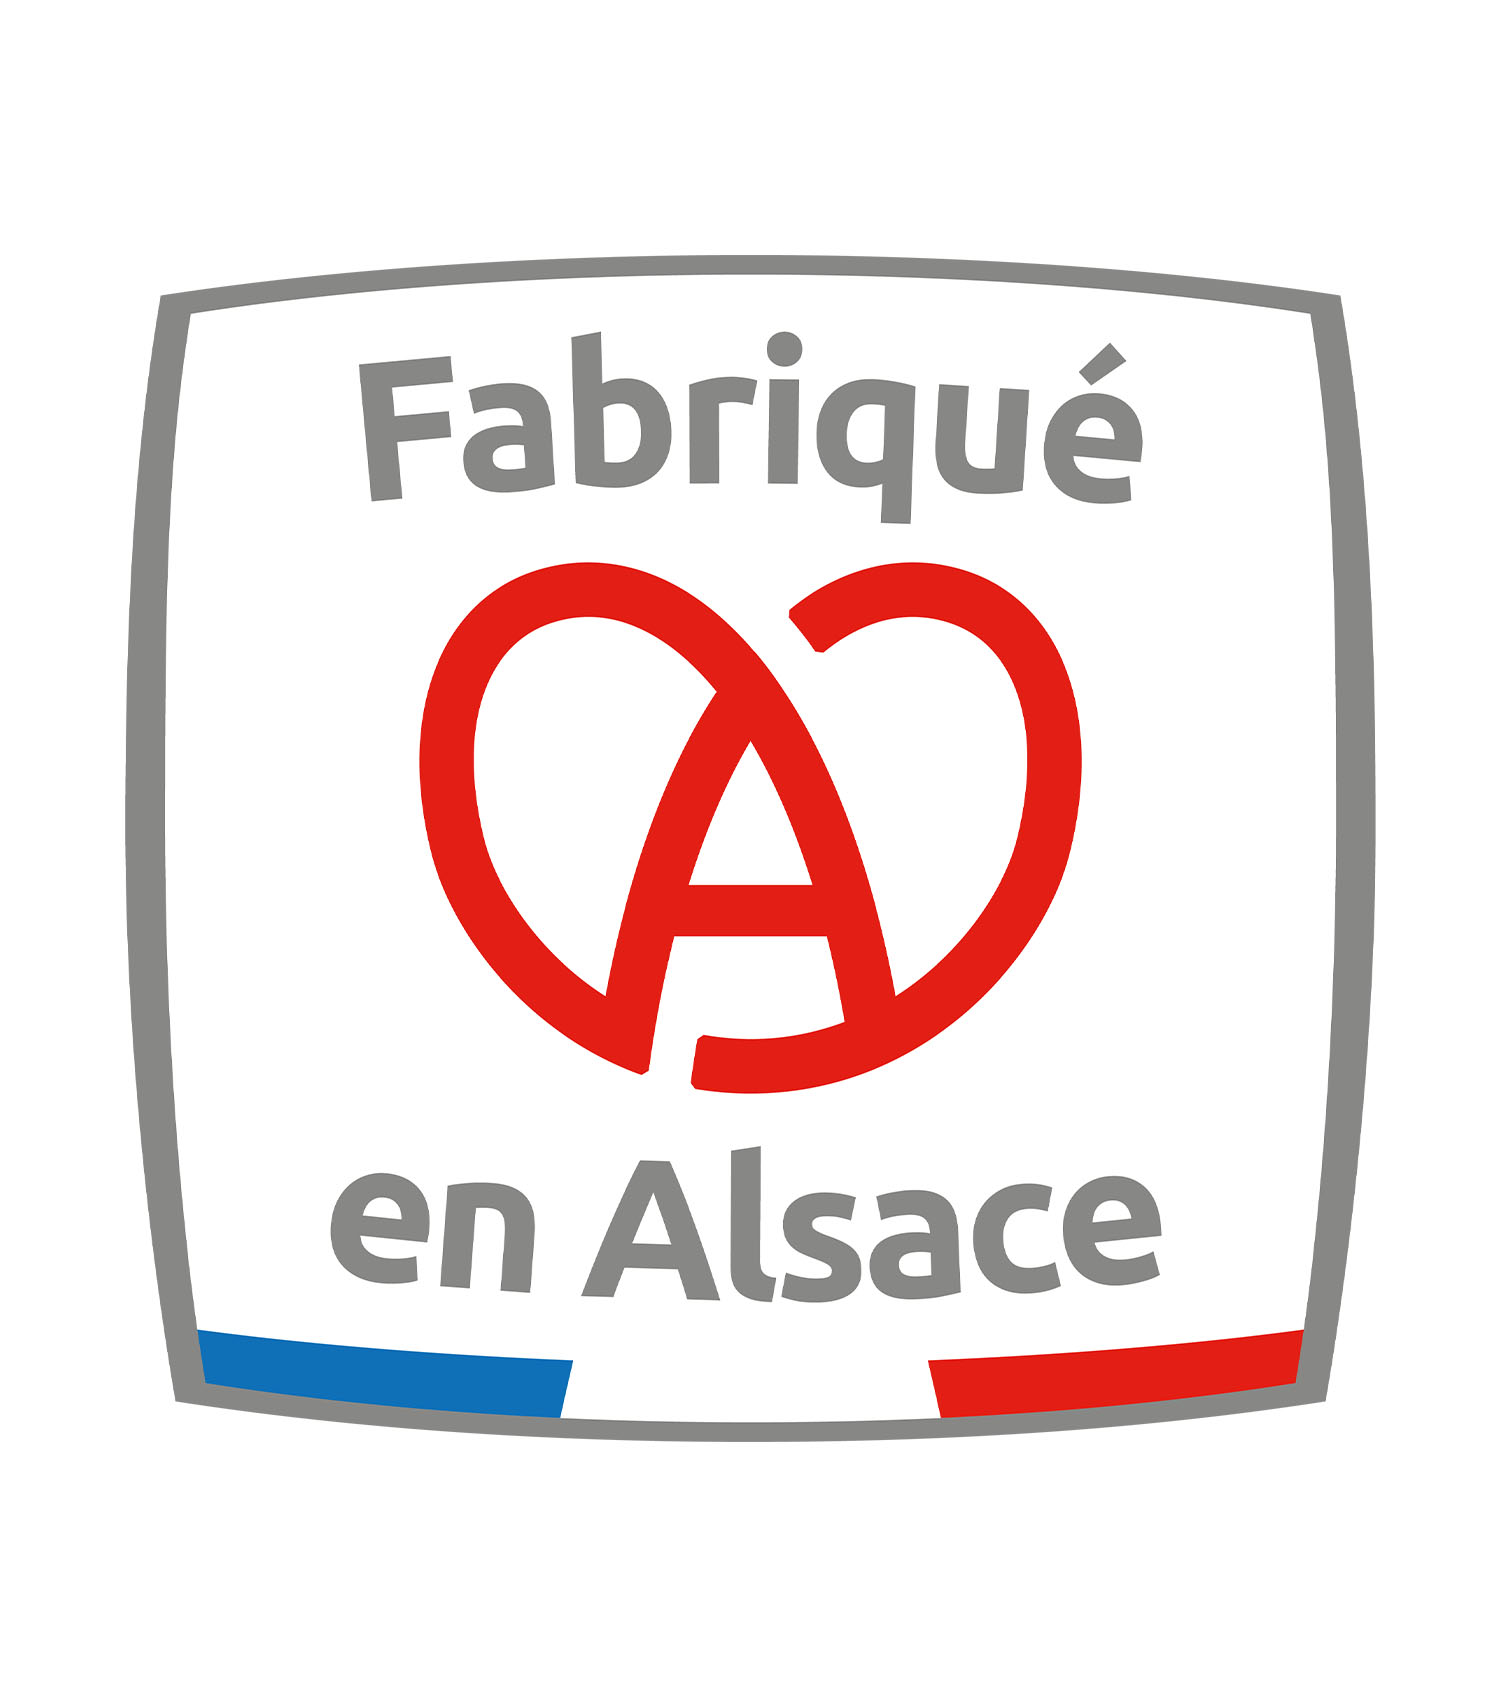 theim-fabrique-alsace-logo-1500x1700px